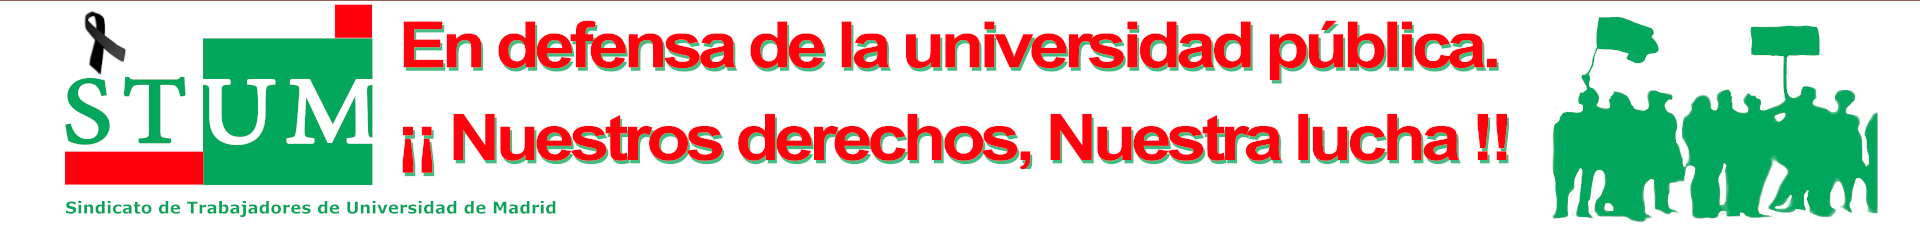 Imagen con Logo del Sindicato de Trabajadores de Universidad de Madrid y literal 